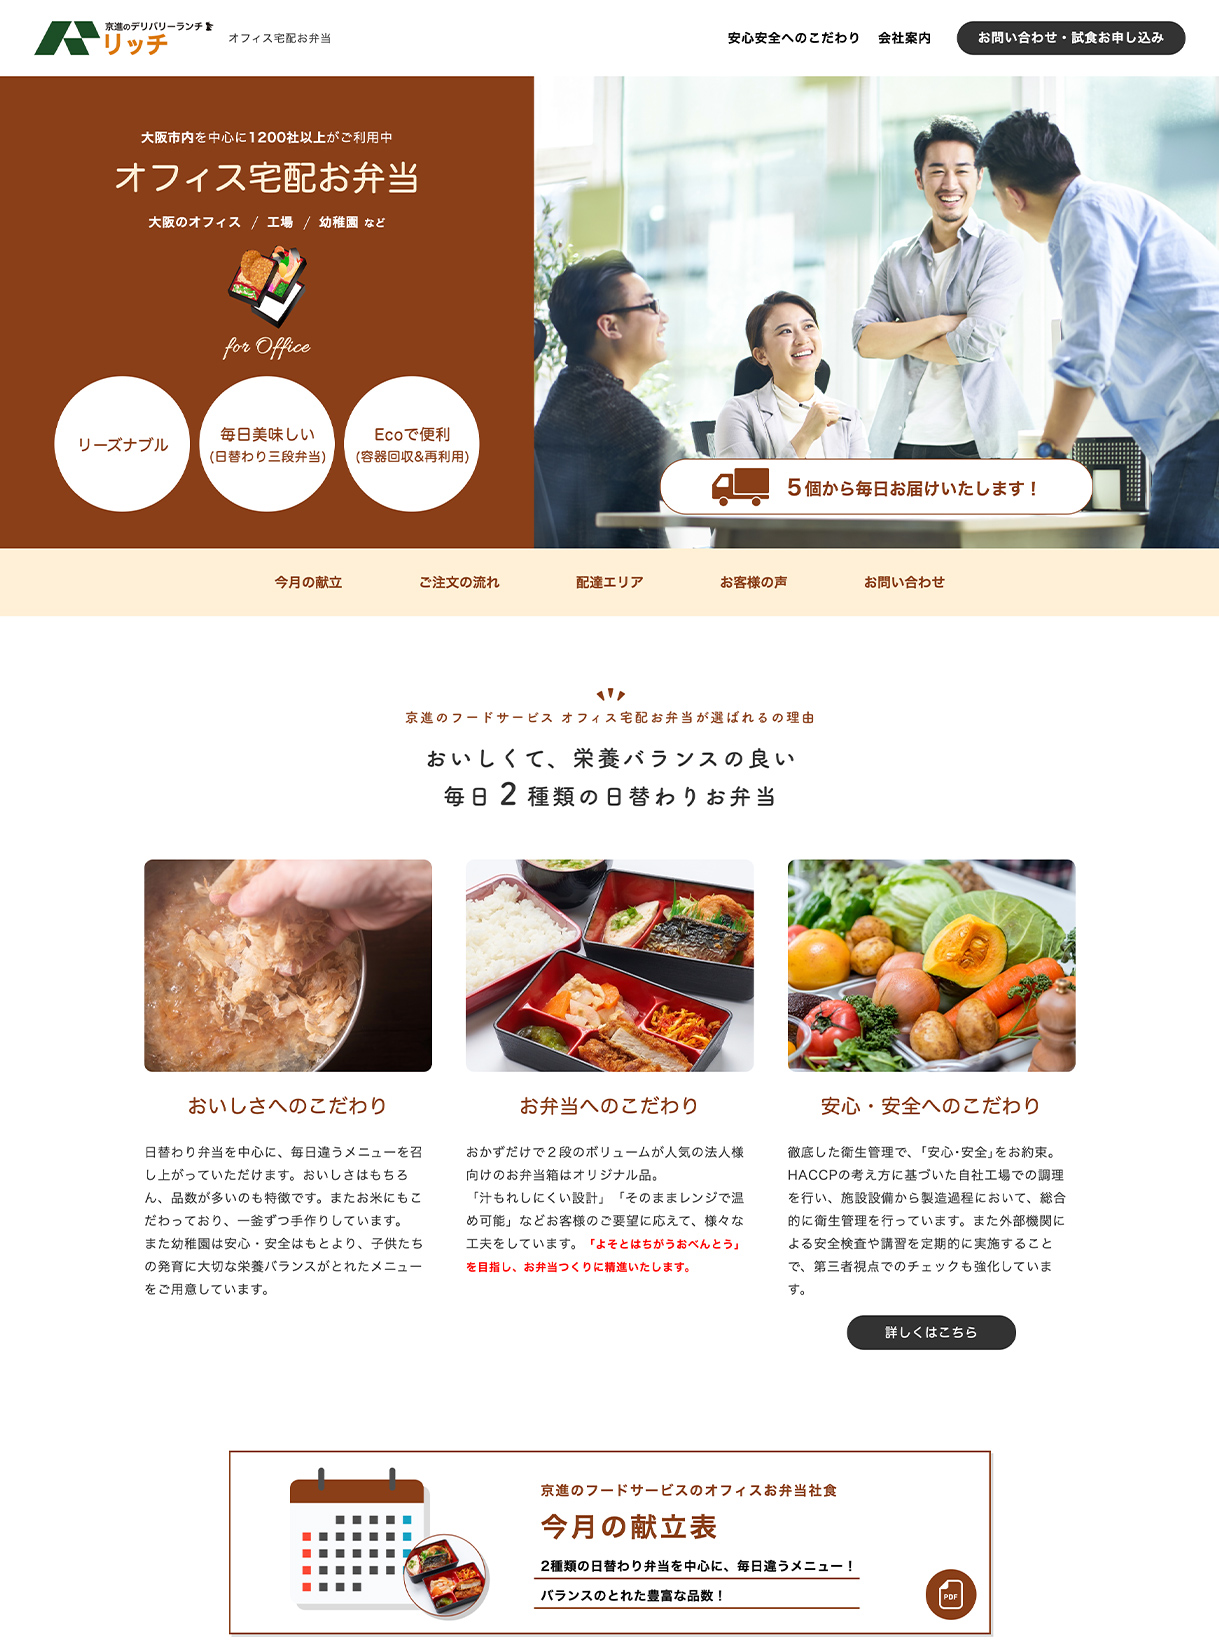 京進フードサービス「もぐもぐ」&「リッチ」のwebサイト画像